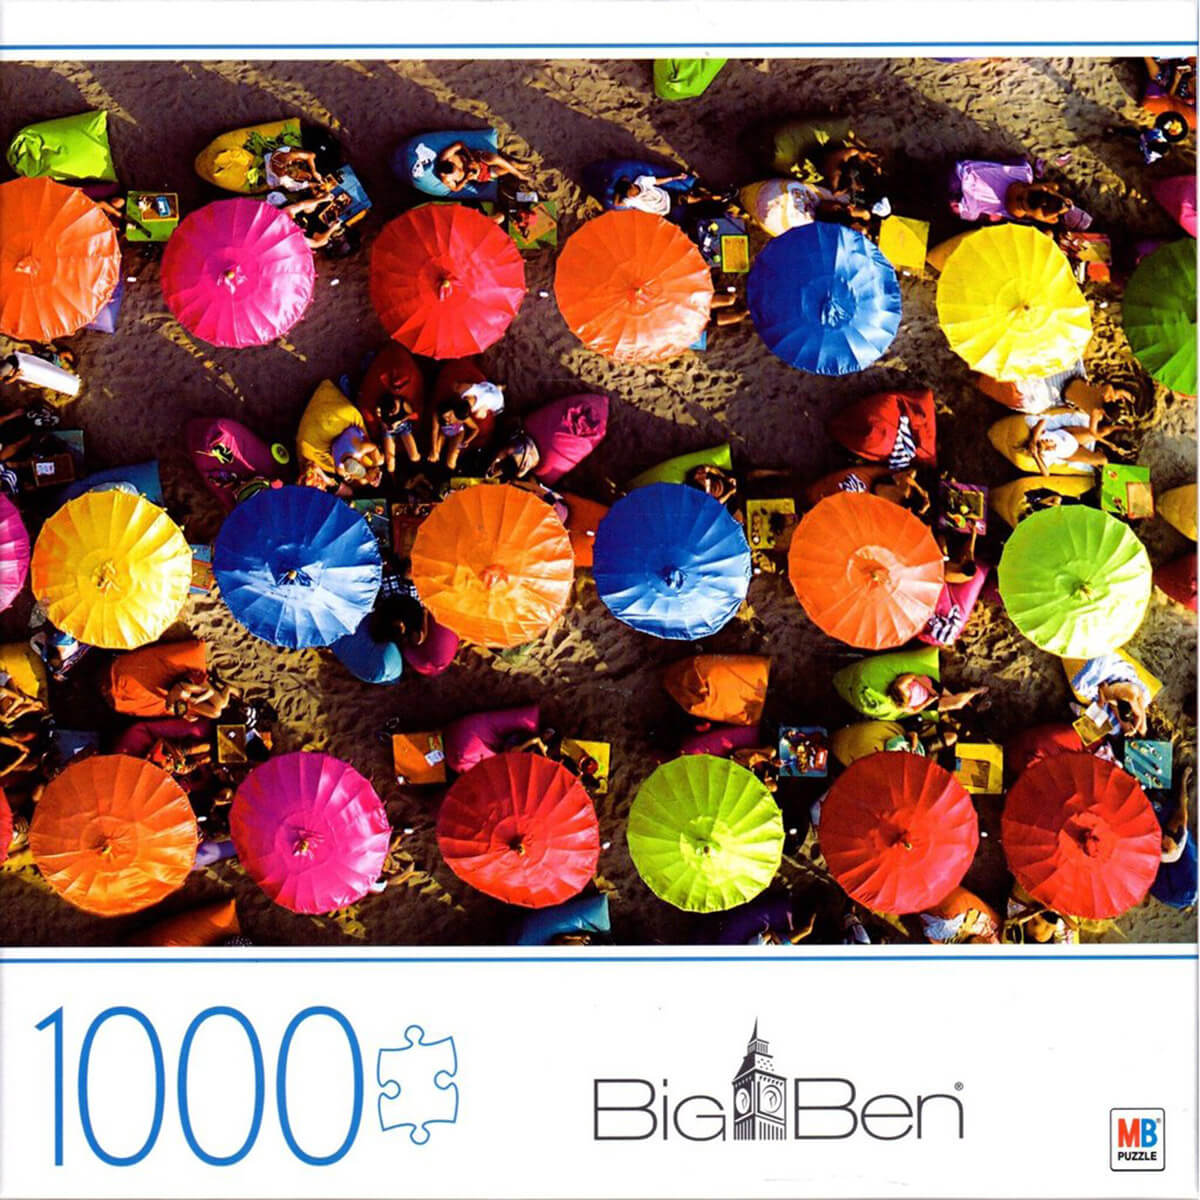 Milton Bradley Big Ben Colorful Umbrellas in Bali 1000 Piece Puzzle